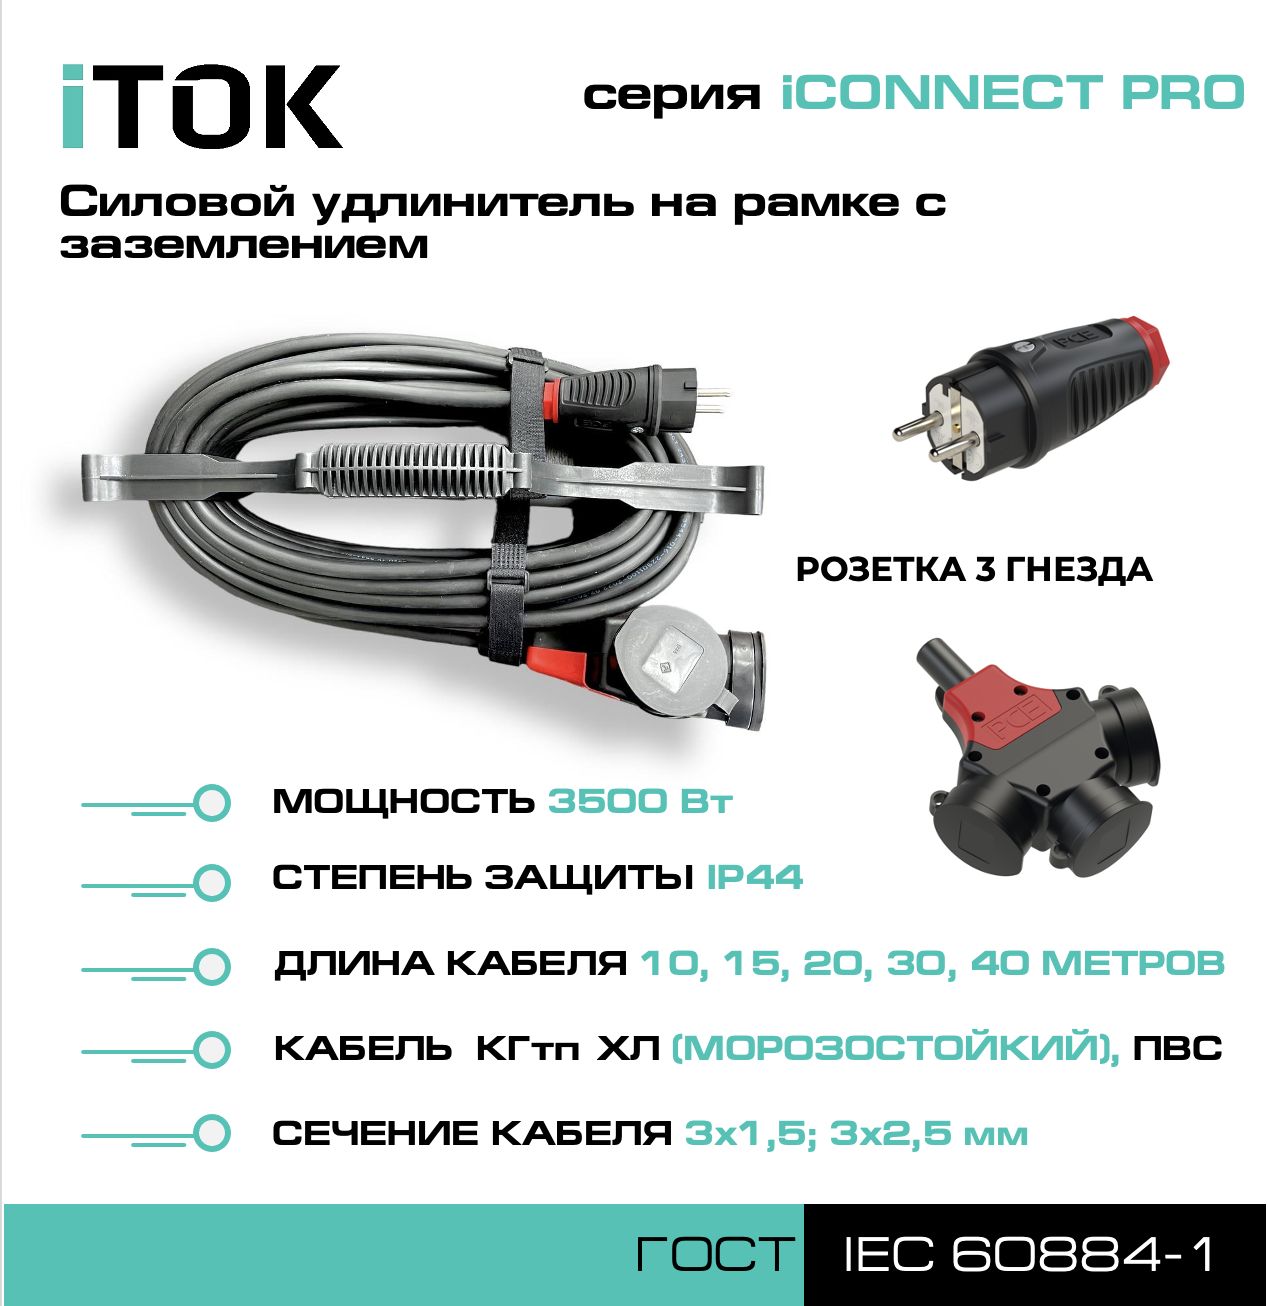 Удлинитель на рамке iTOK iCONNECT PRO с заземлением КГтп-ХЛ 3х1,5 мм 3 гнезда IP44 15 м